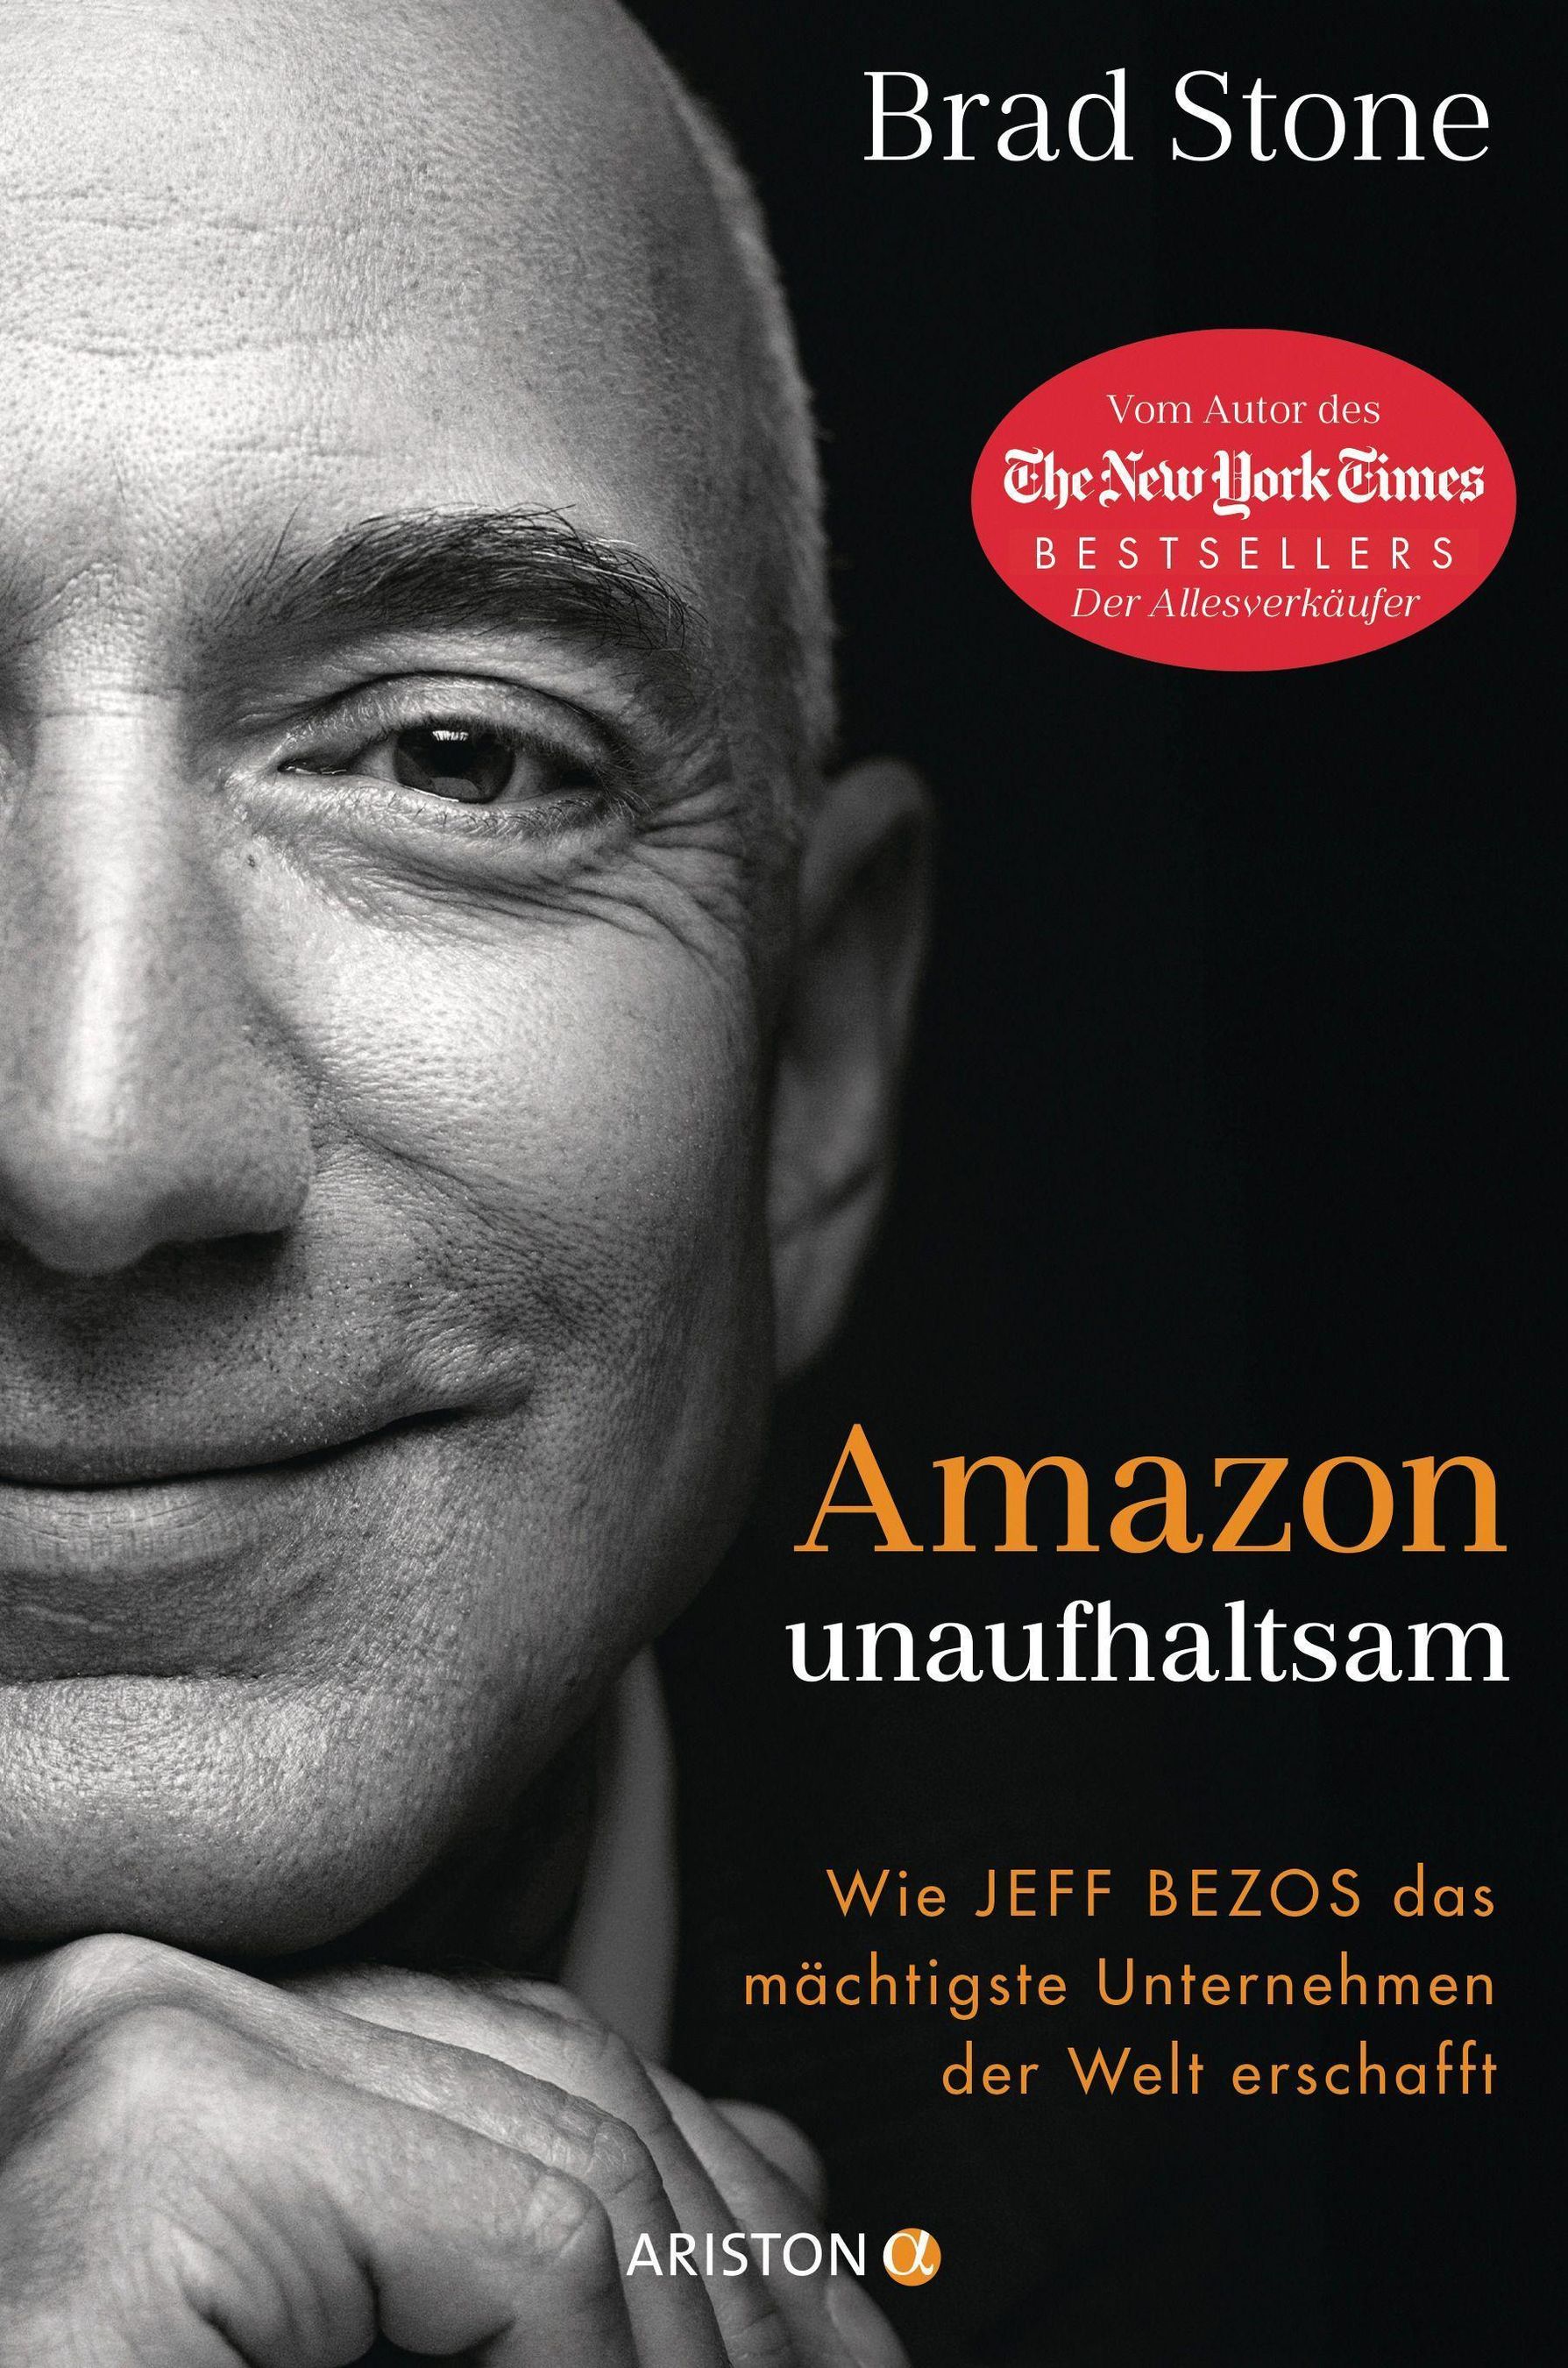 Amazon unaufhaltsam Buch von Brad Stone versandkostenfrei bei Weltbild.at